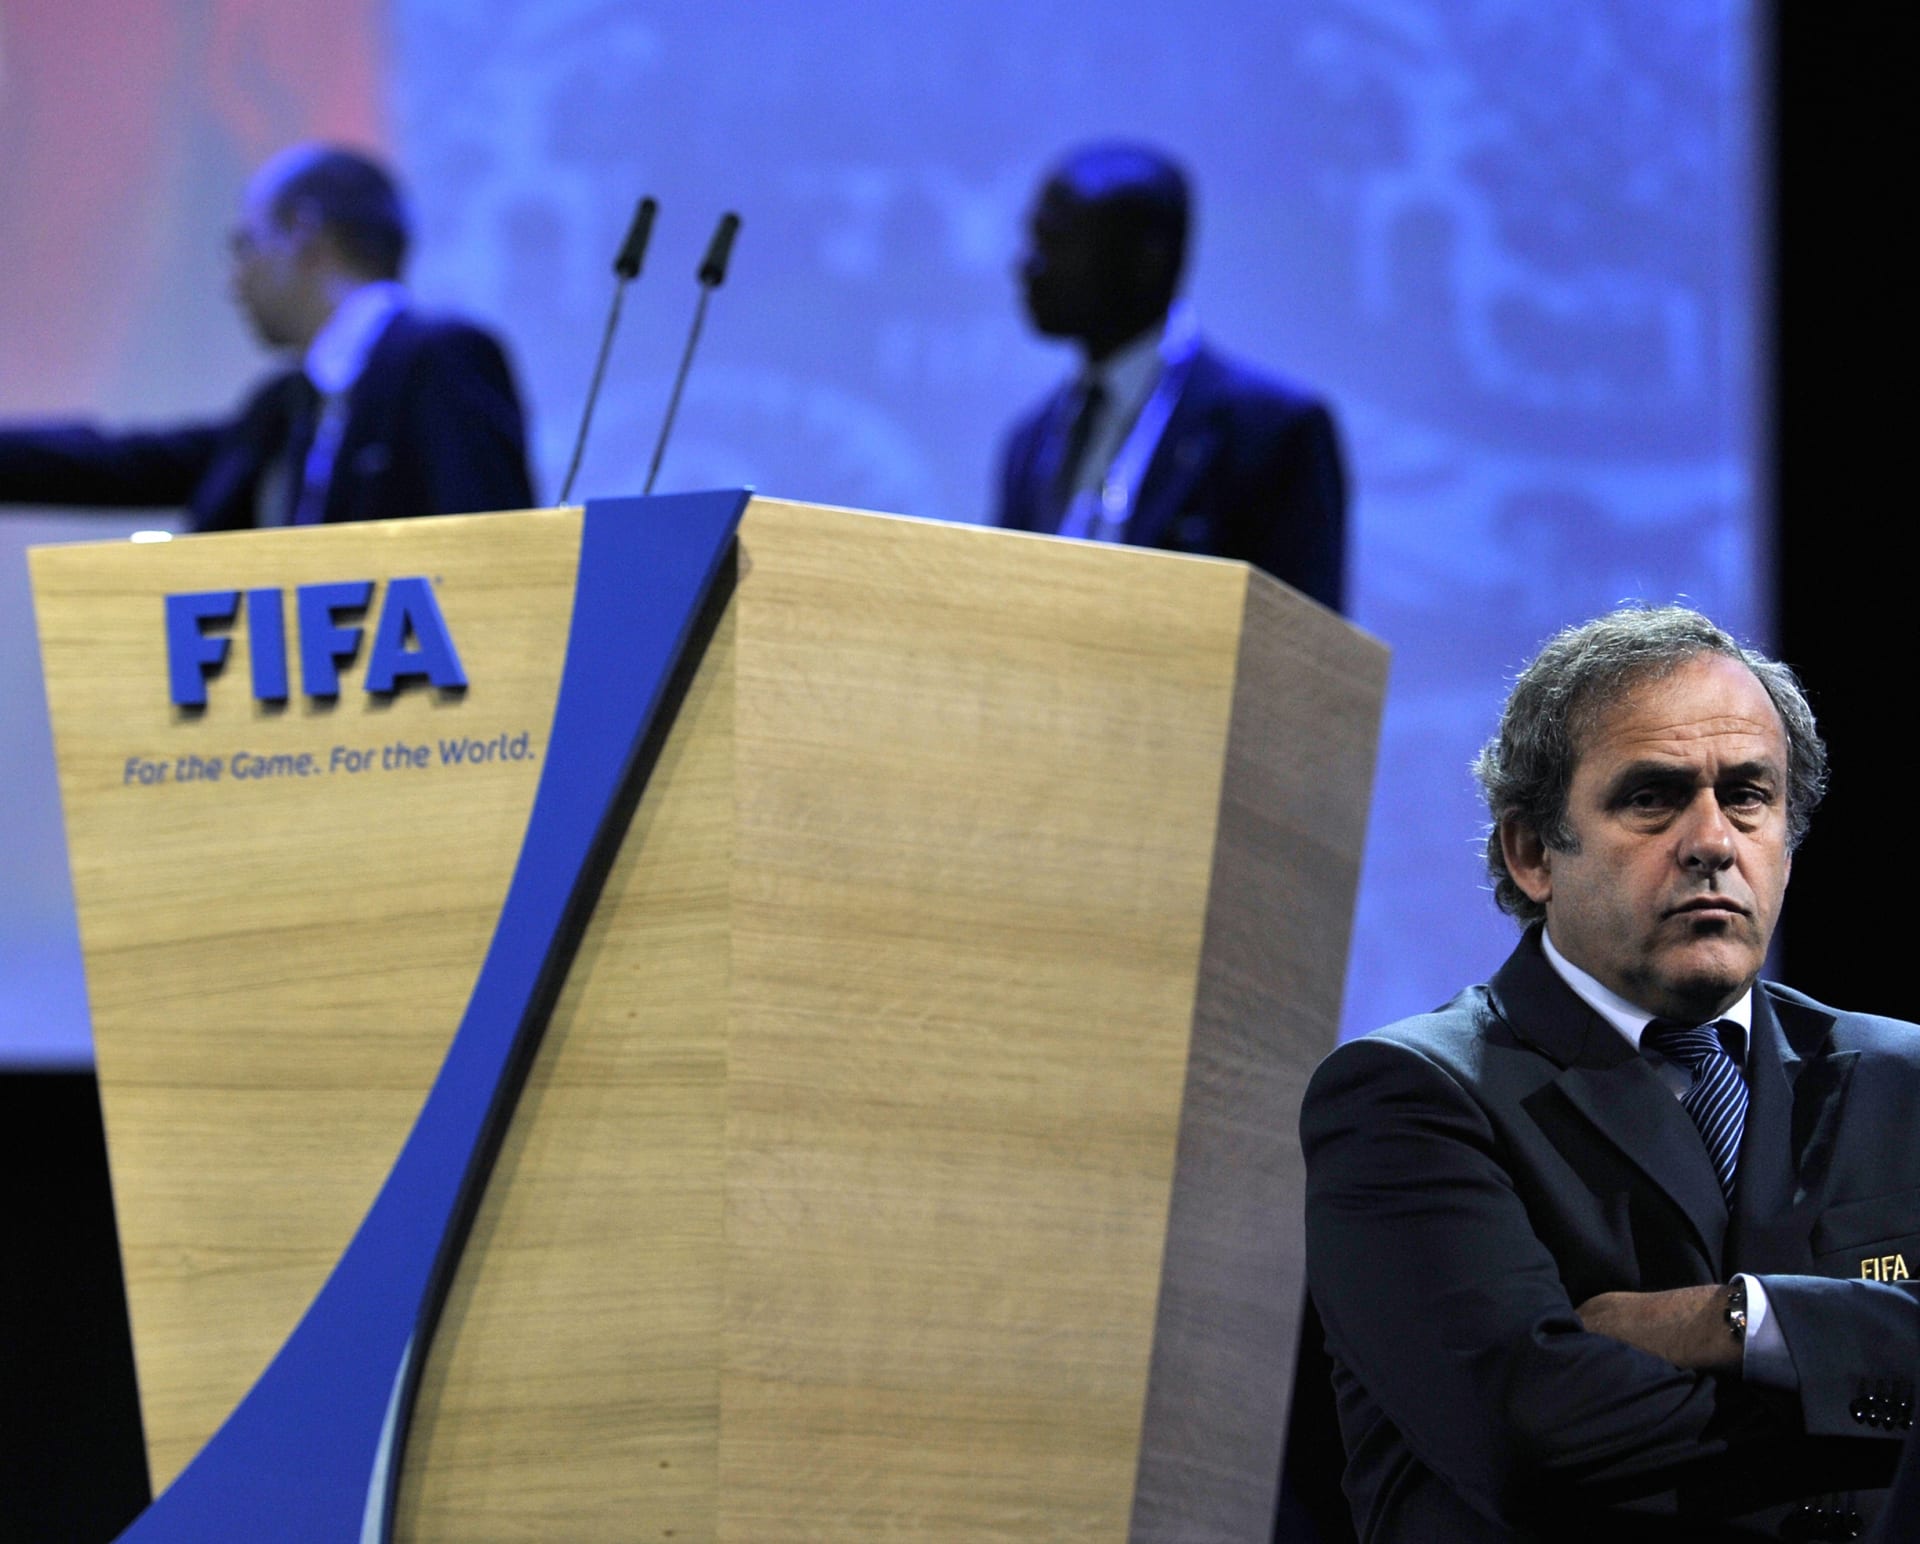 Zpočátku se zdálo, že skandál může Platinimu dopomoci k postu šéfa FIFA.